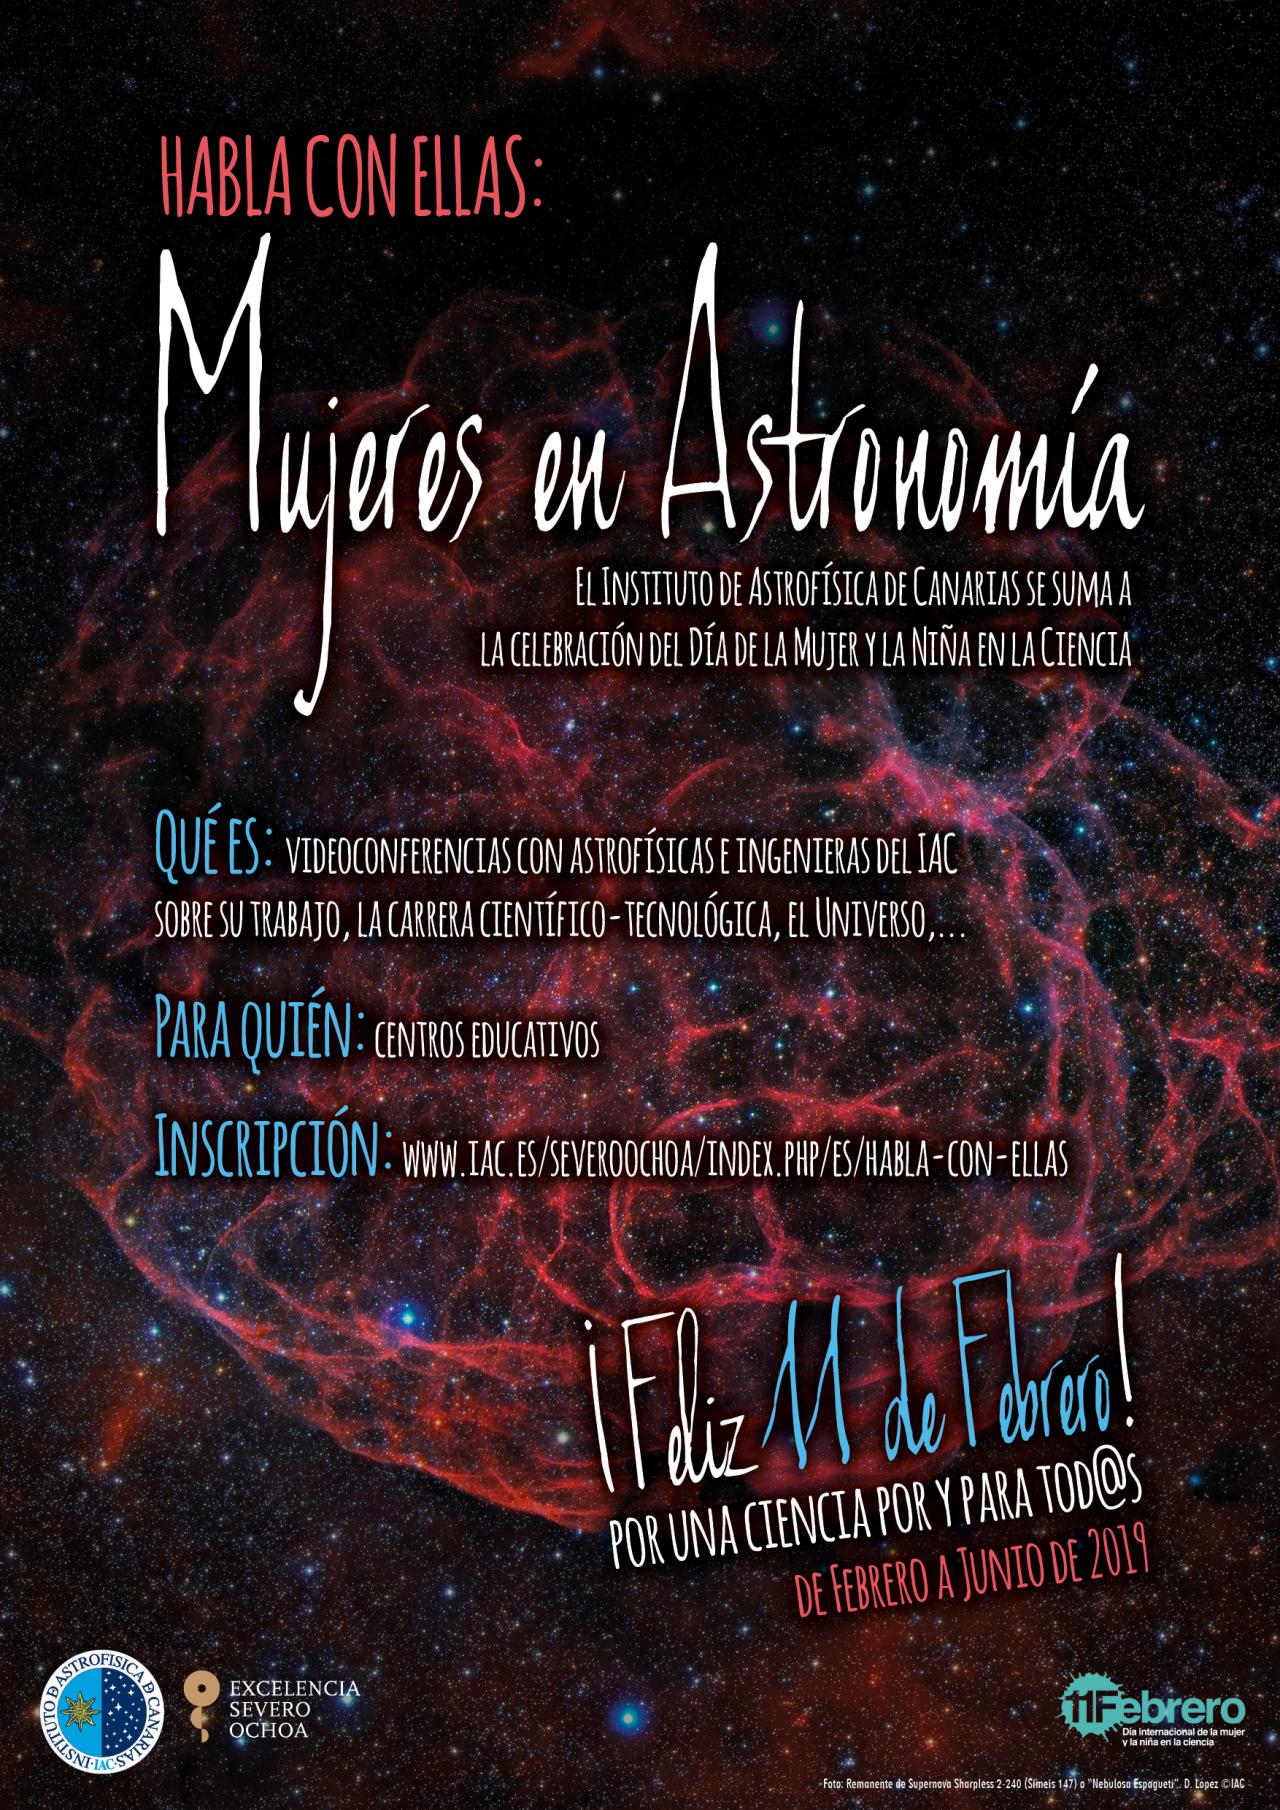 Cartel anunciador del proyecto "Habla con Ellas: Mujeres en Astronomía" 2019